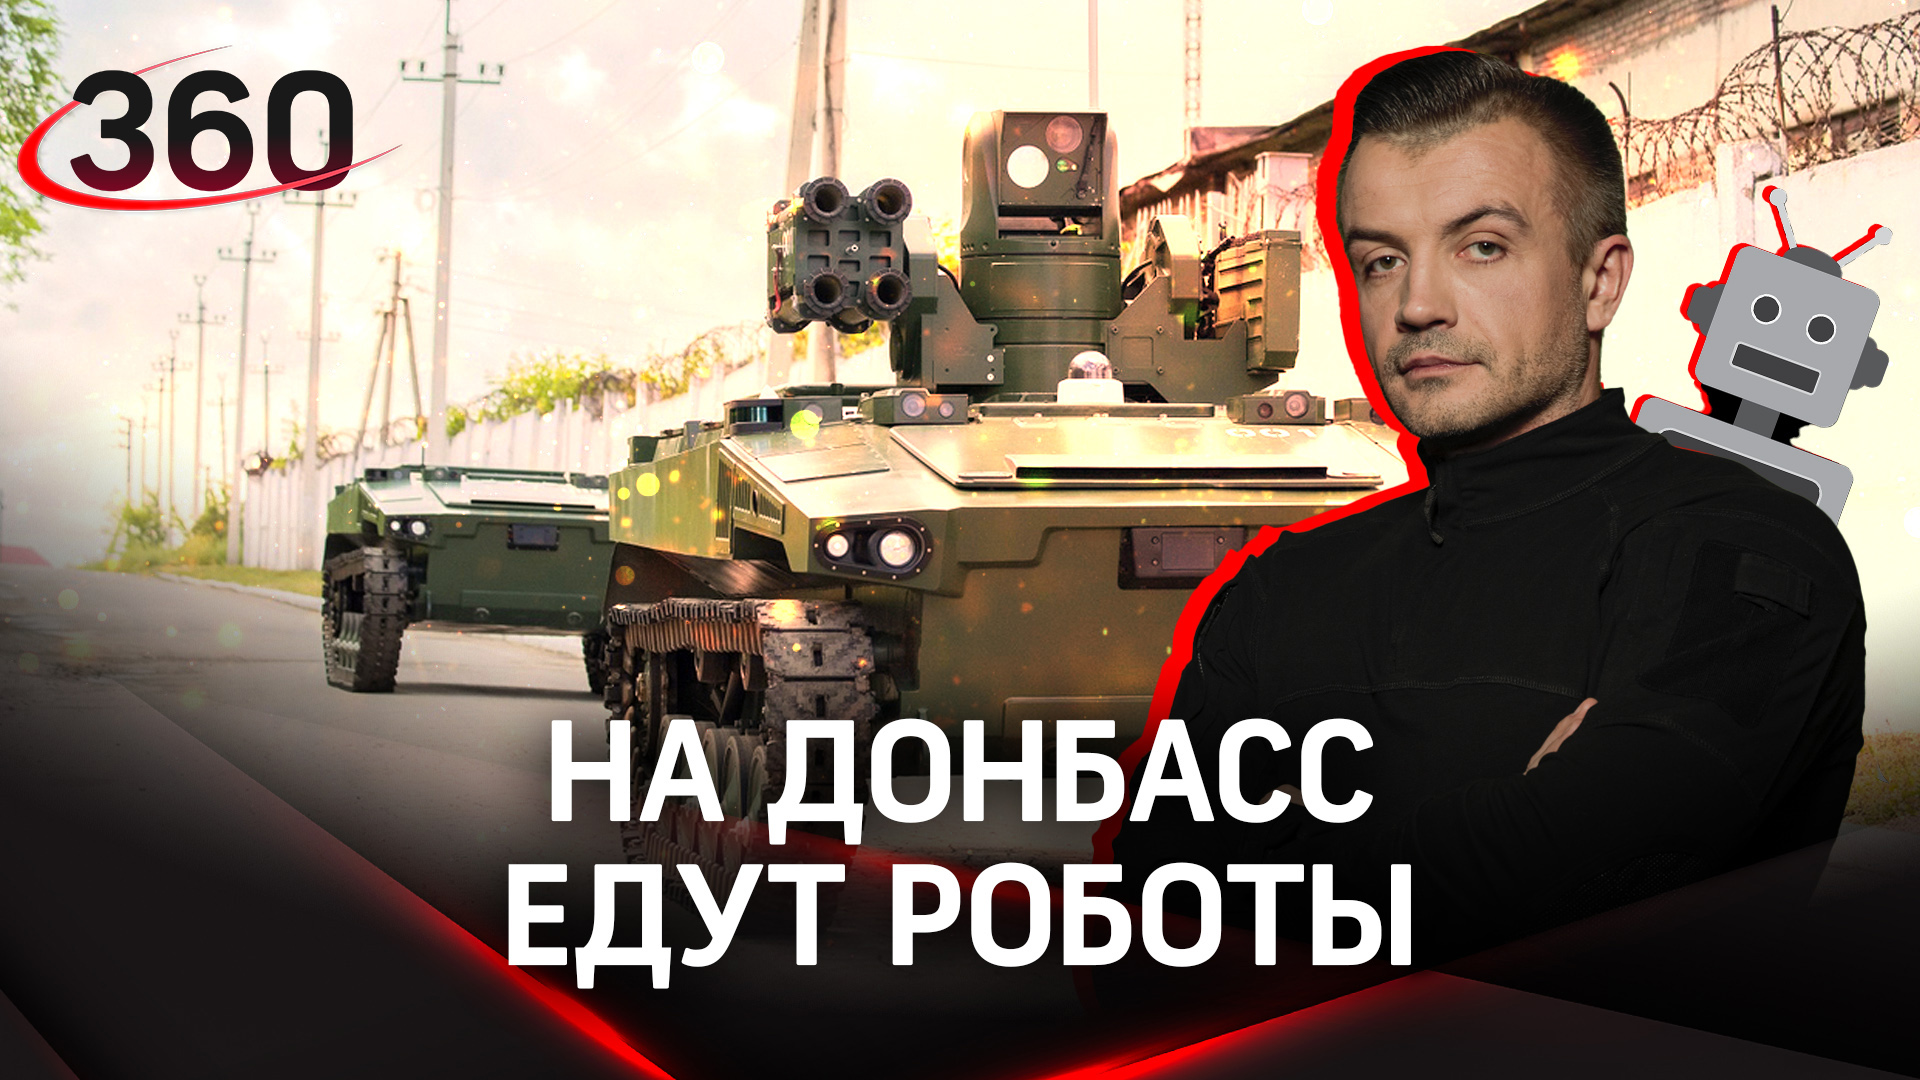 Боевые роботы «Маркер» едут на Донбасс! Что о них известно? | Антон Шестаков